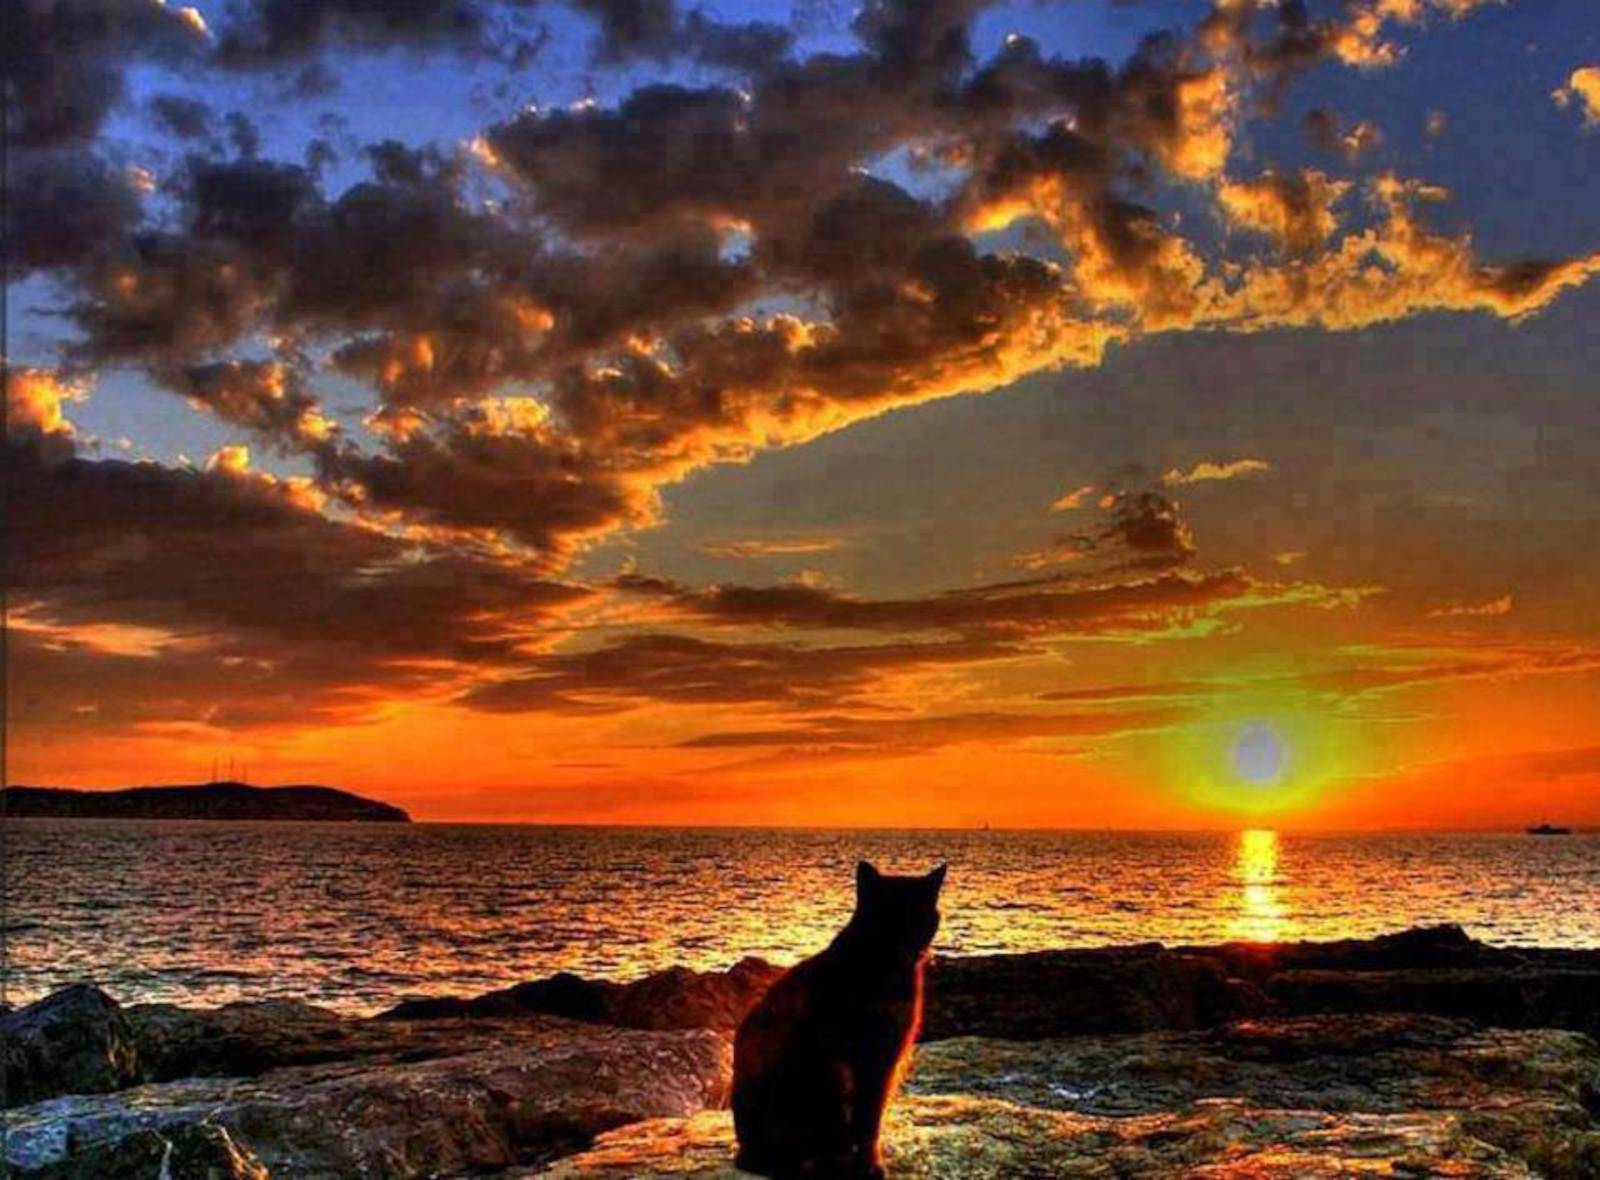 кот на фоне моря